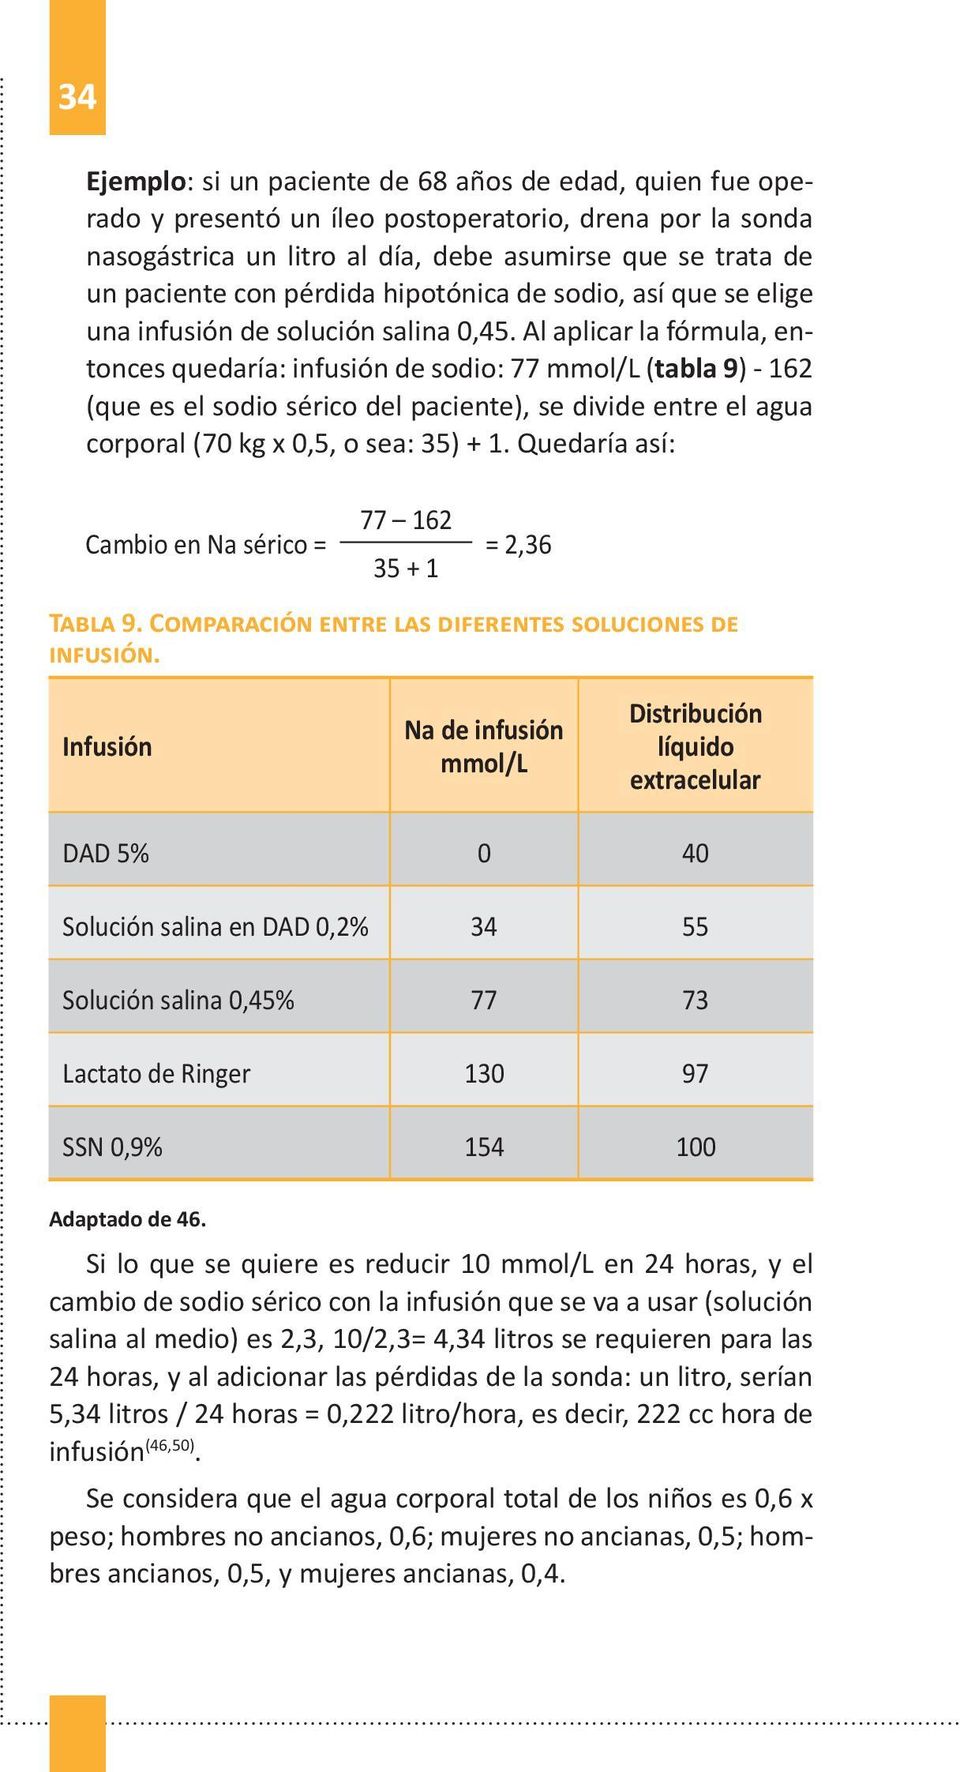 Al aplicar la fórmula, entonces quedaría: infusión de sodio: 77 mmol/l (tabla 9) - 162 (que es el sodio sérico del paciente), se divide entre el agua corporal (70 kg x 0,5, o sea: 35) + 1.